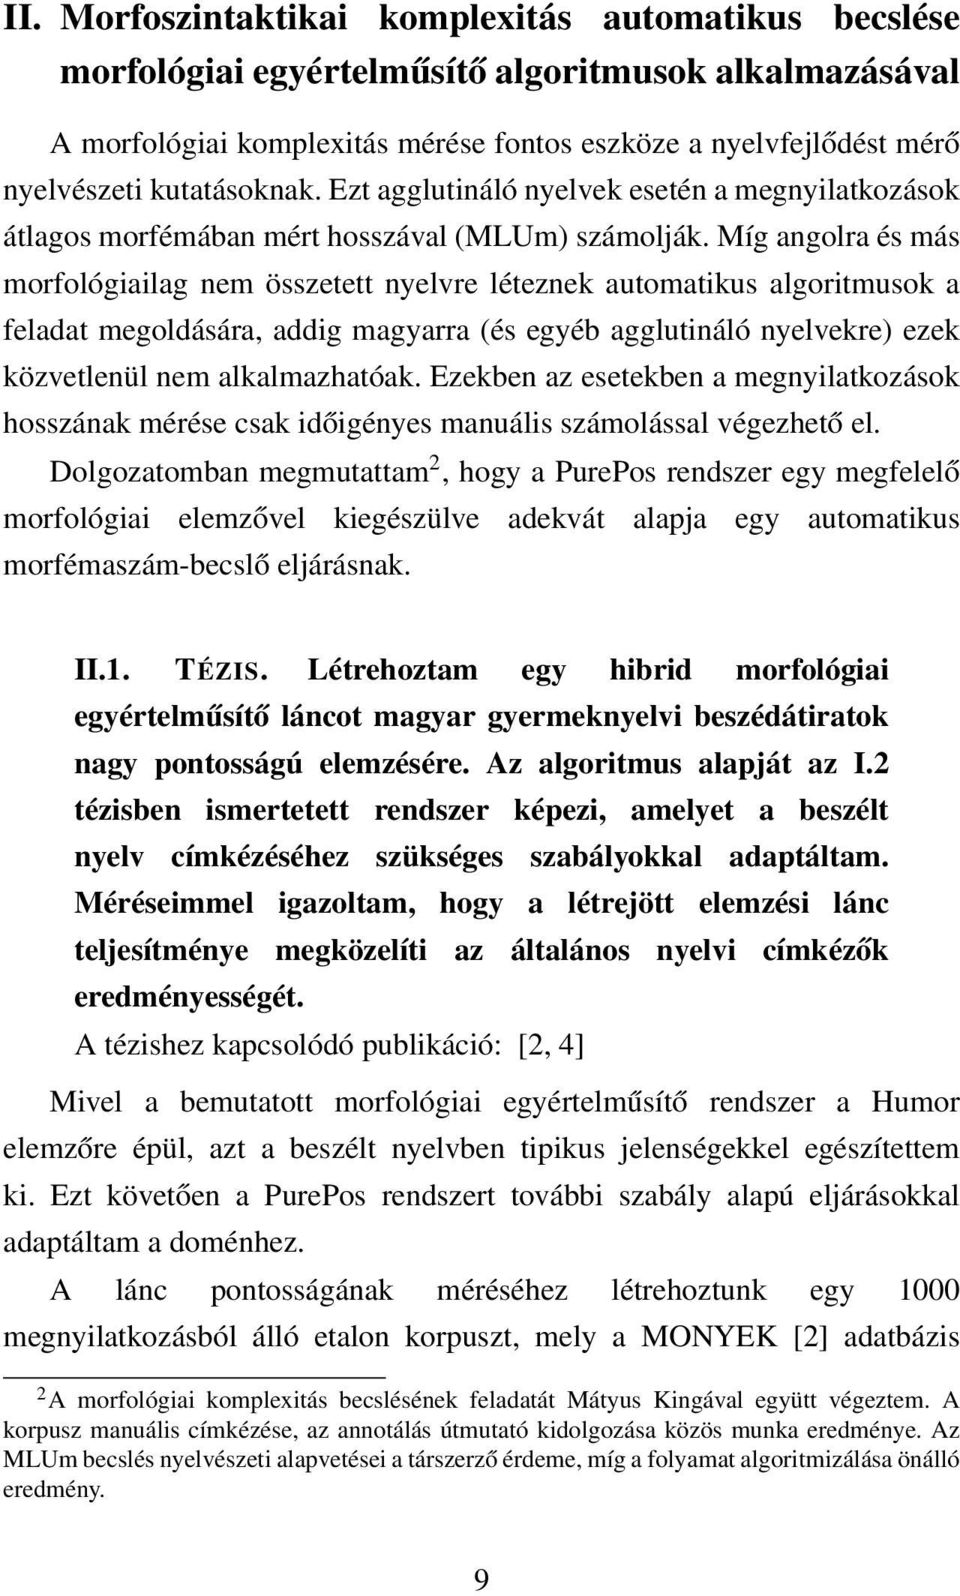 Míg angolra és más morfológiailag nem összetett nyelvre léteznek automatikus algoritmusok a feladat megoldására, addig magyarra (és egyéb agglutináló nyelvekre) ezek közvetlenül nem alkalmazhatóak.